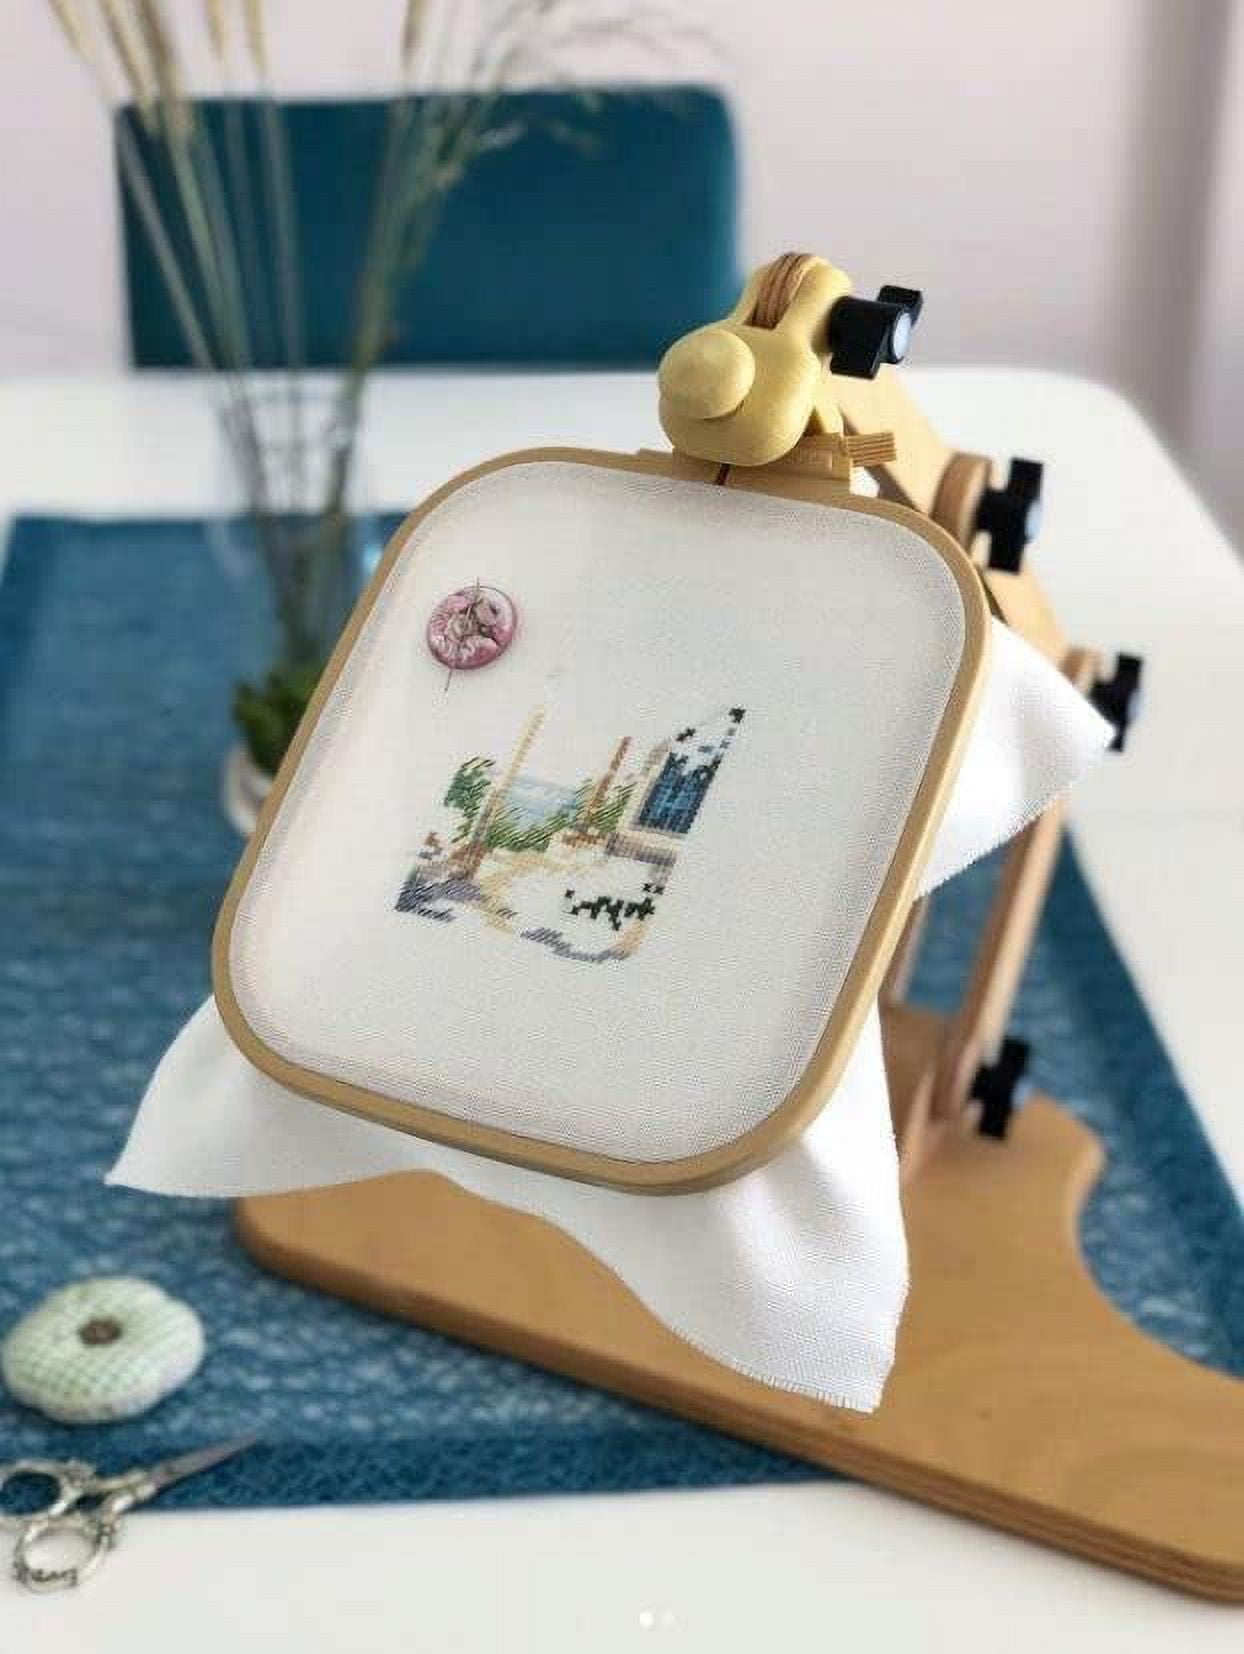 Nurge Adjustable Embroidery Table Stand 190-4